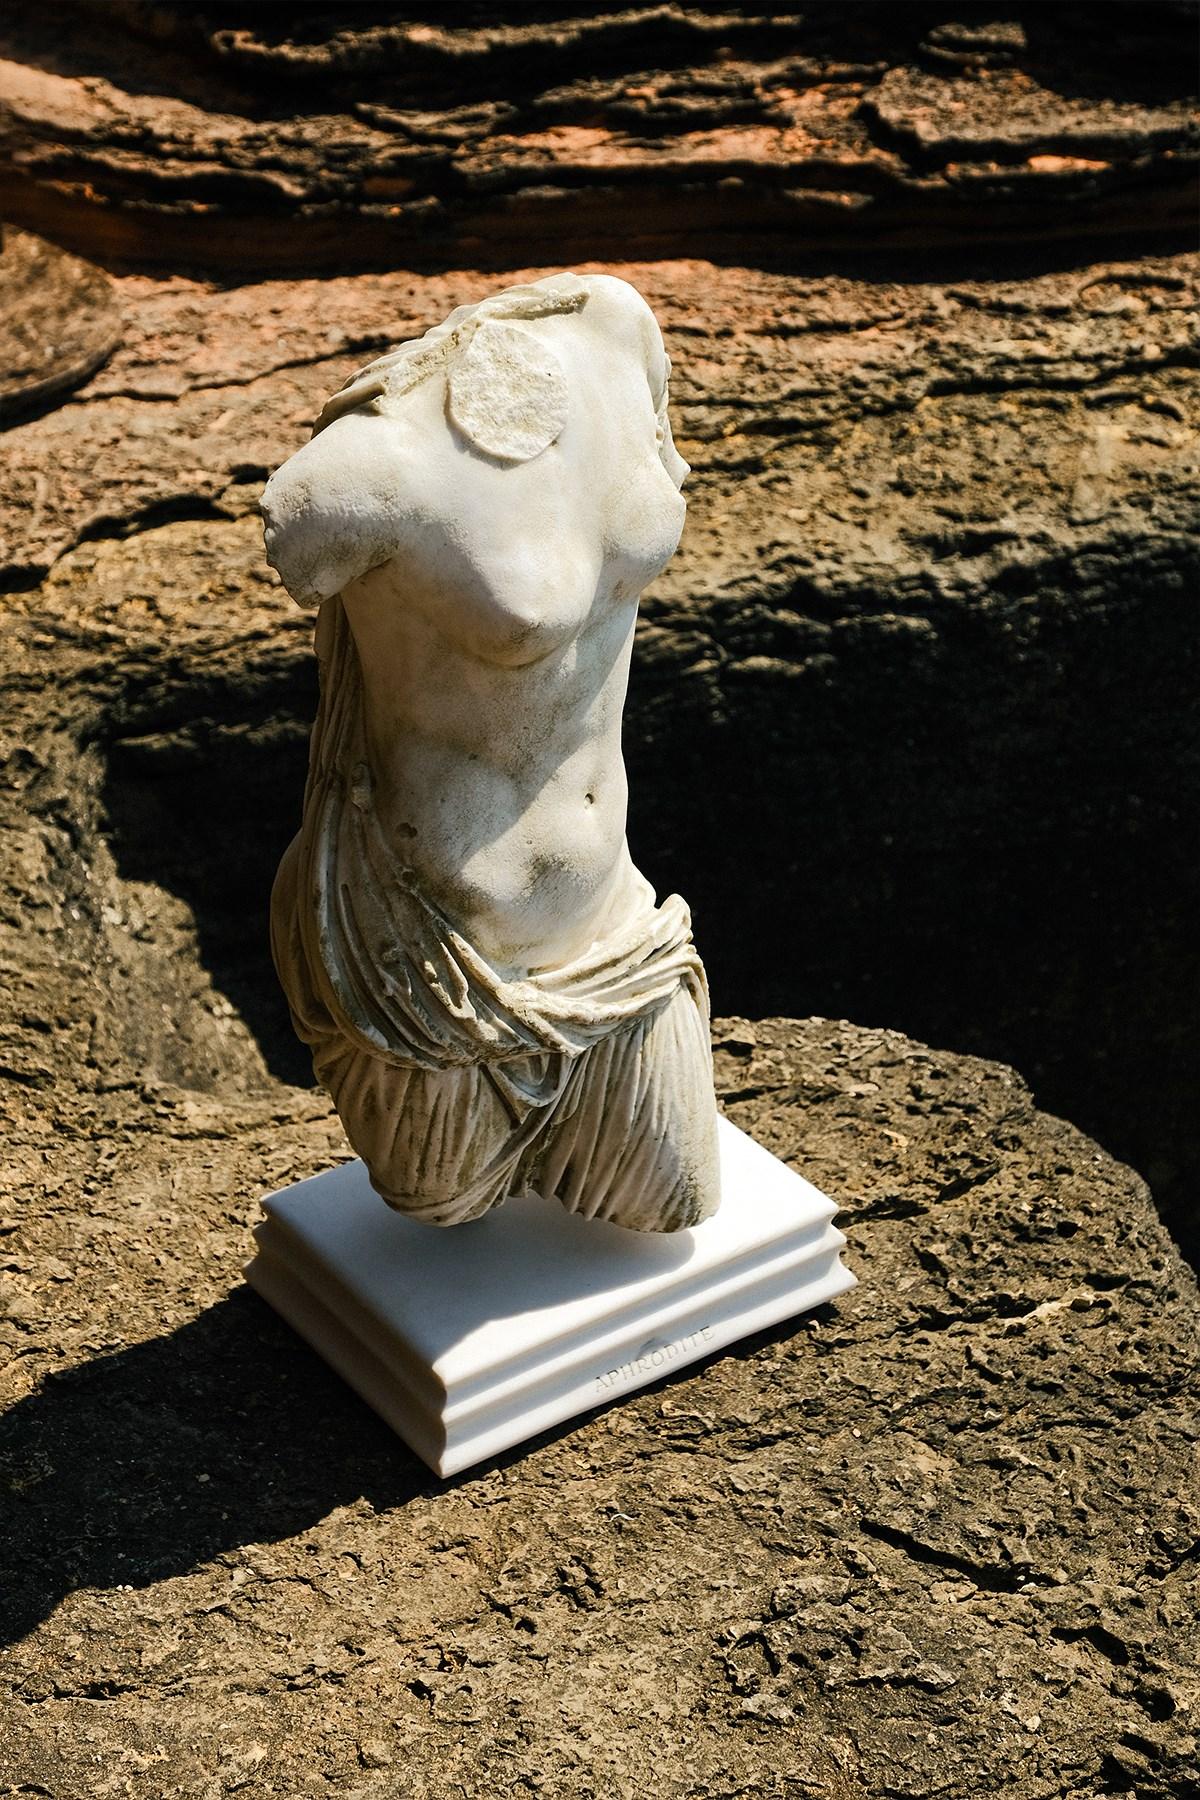 Aphrodite ist in der griechischen Mythologie als Göttin der Liebe und Schönheit bekannt. In der römischen Mythologie wird sie Venus genannt. Das Original ist im Museum von Ephesus ausgestellt.
Die besondere Auswahl von Lagu bringt die bedeutendsten